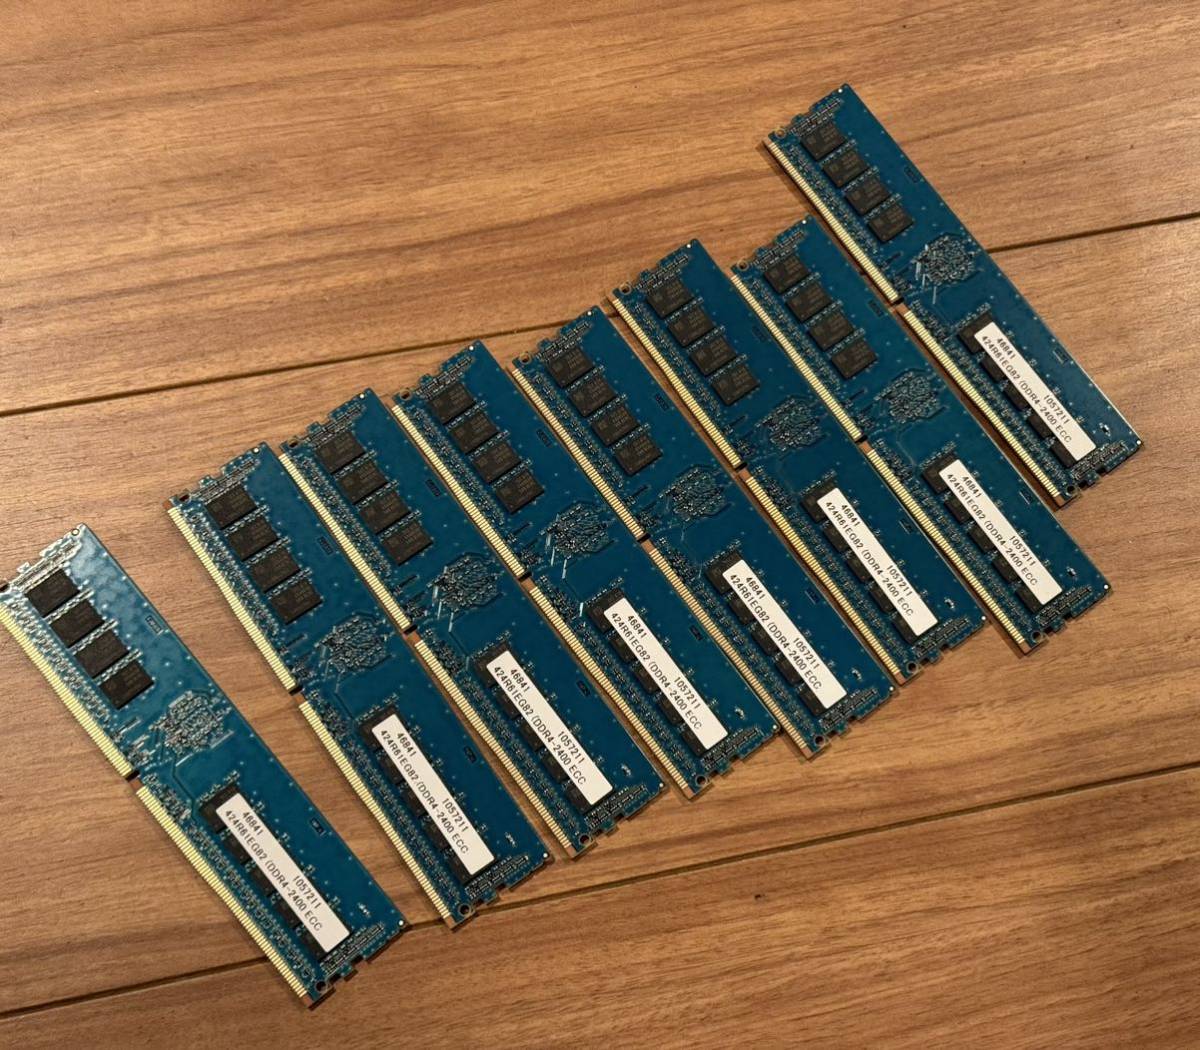 ★美品送無★日本製 Century DDR4 ECC REG 16GB*8 計128GB メモリ PC4-19200 Samusng チップ Made in Japan 高品質_画像4